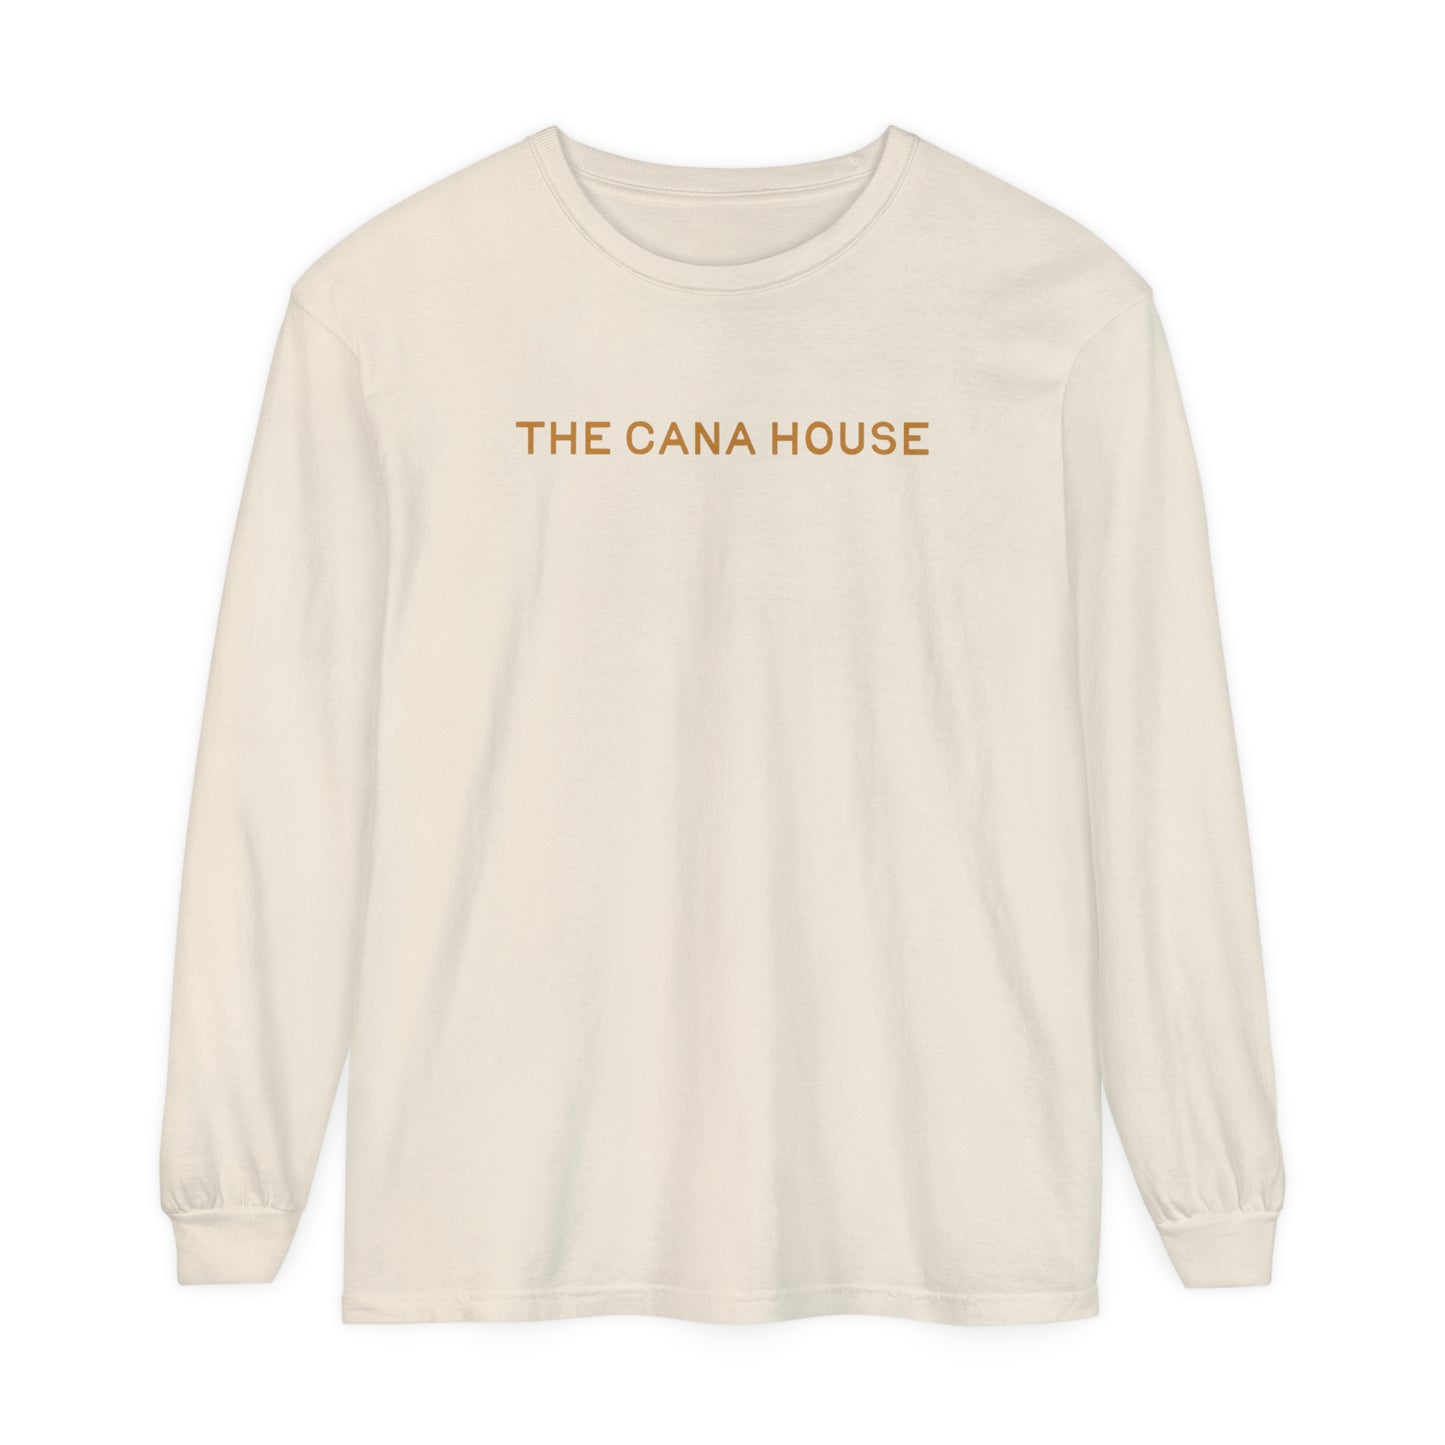 Cana House Long Sleeve Tee